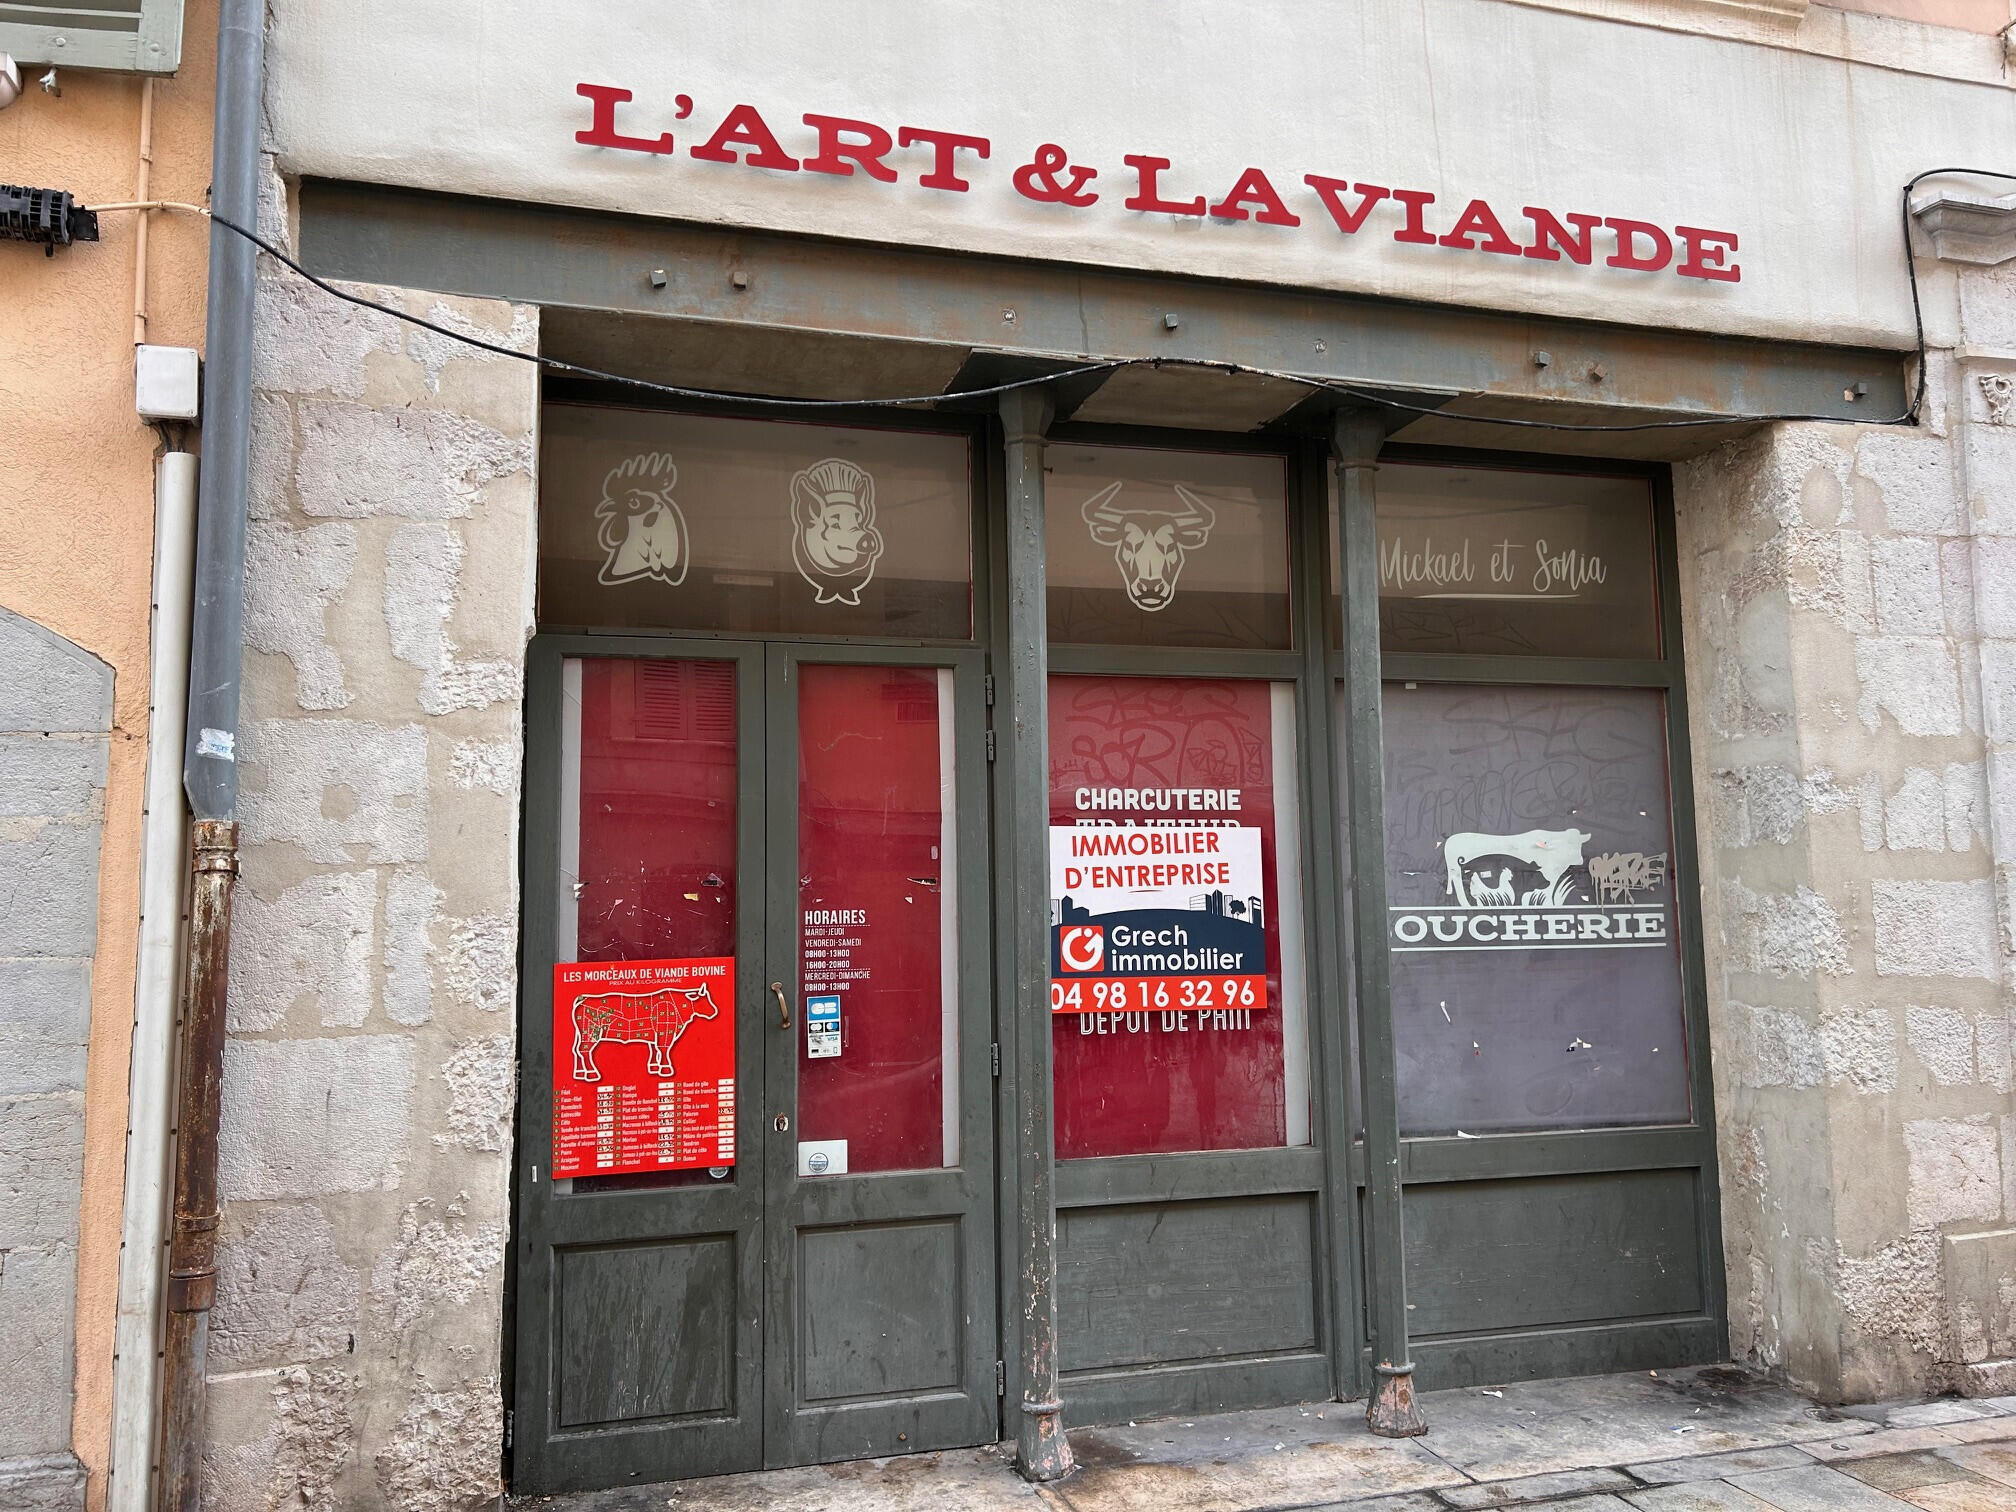 A louer local commercial 86m² Place d'armes Toulon